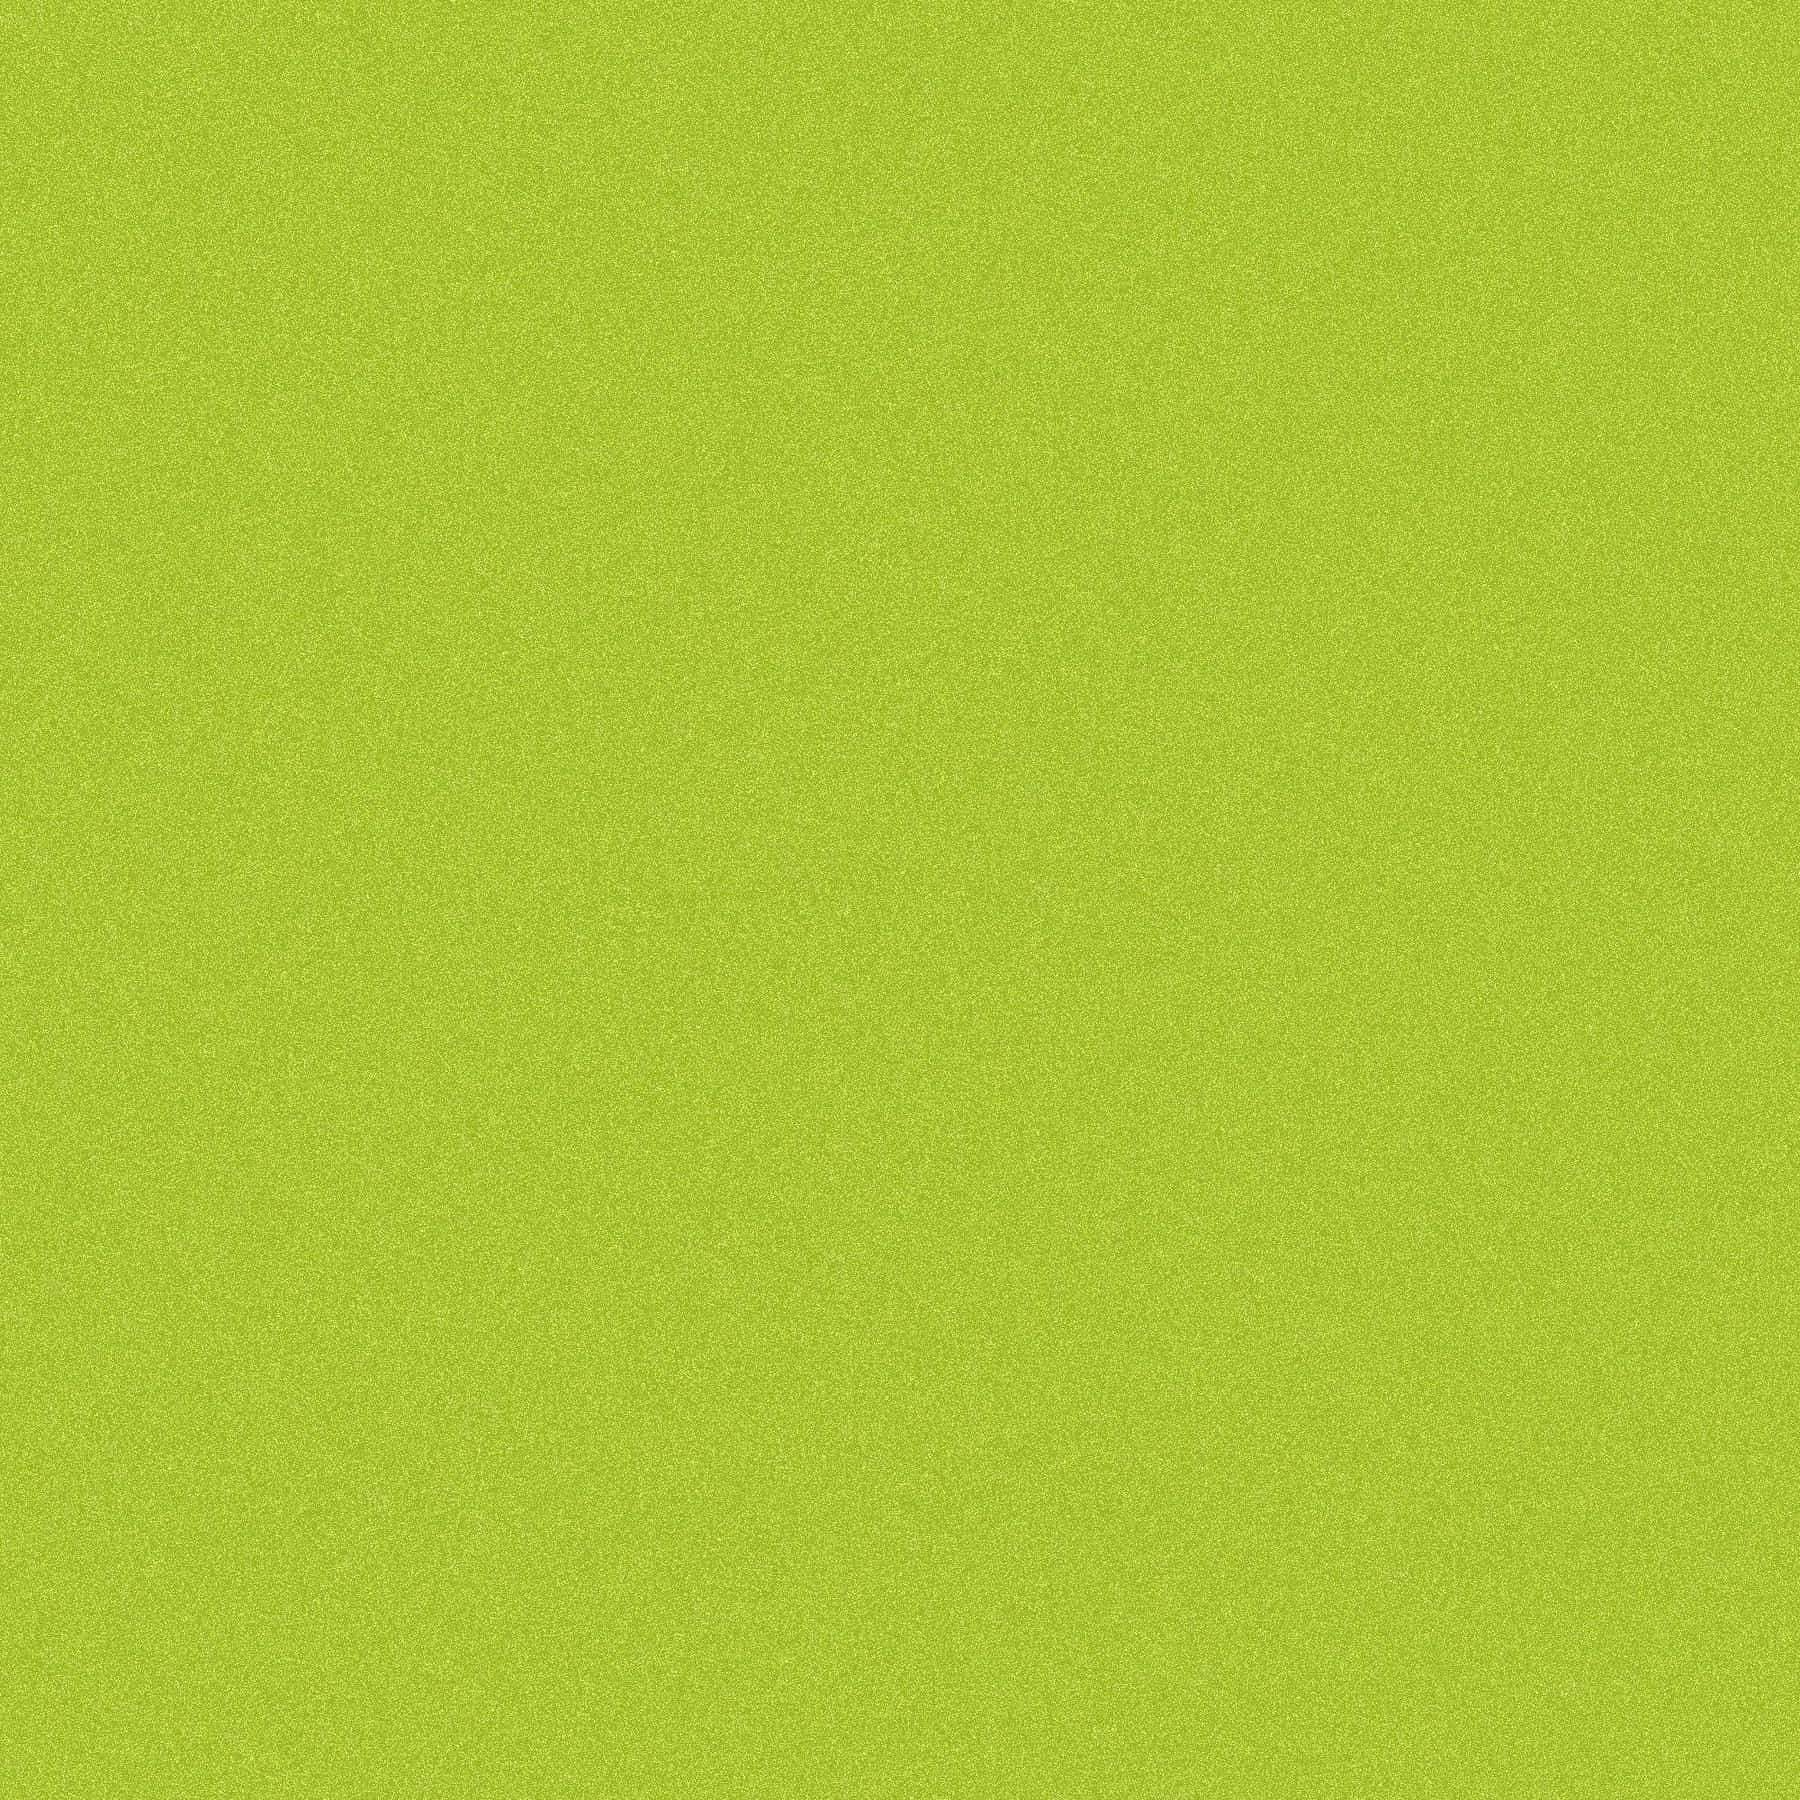 Fondode Color Verde Vibrante Sólido. Fondo de pantalla